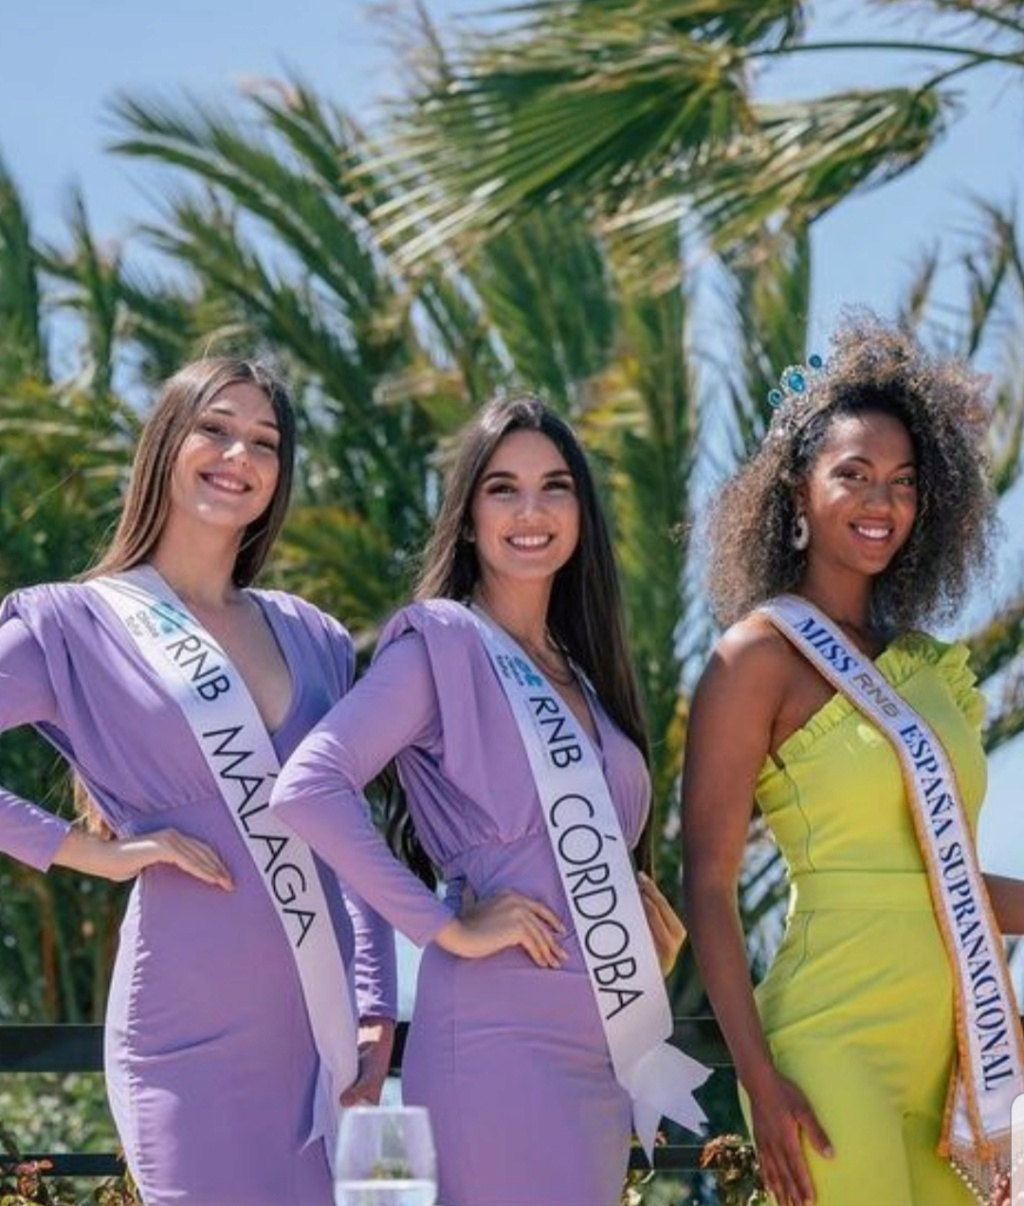 Team Málaga nuevos dueños de la franquicia "Miss Supranational" - Página 6 20230422